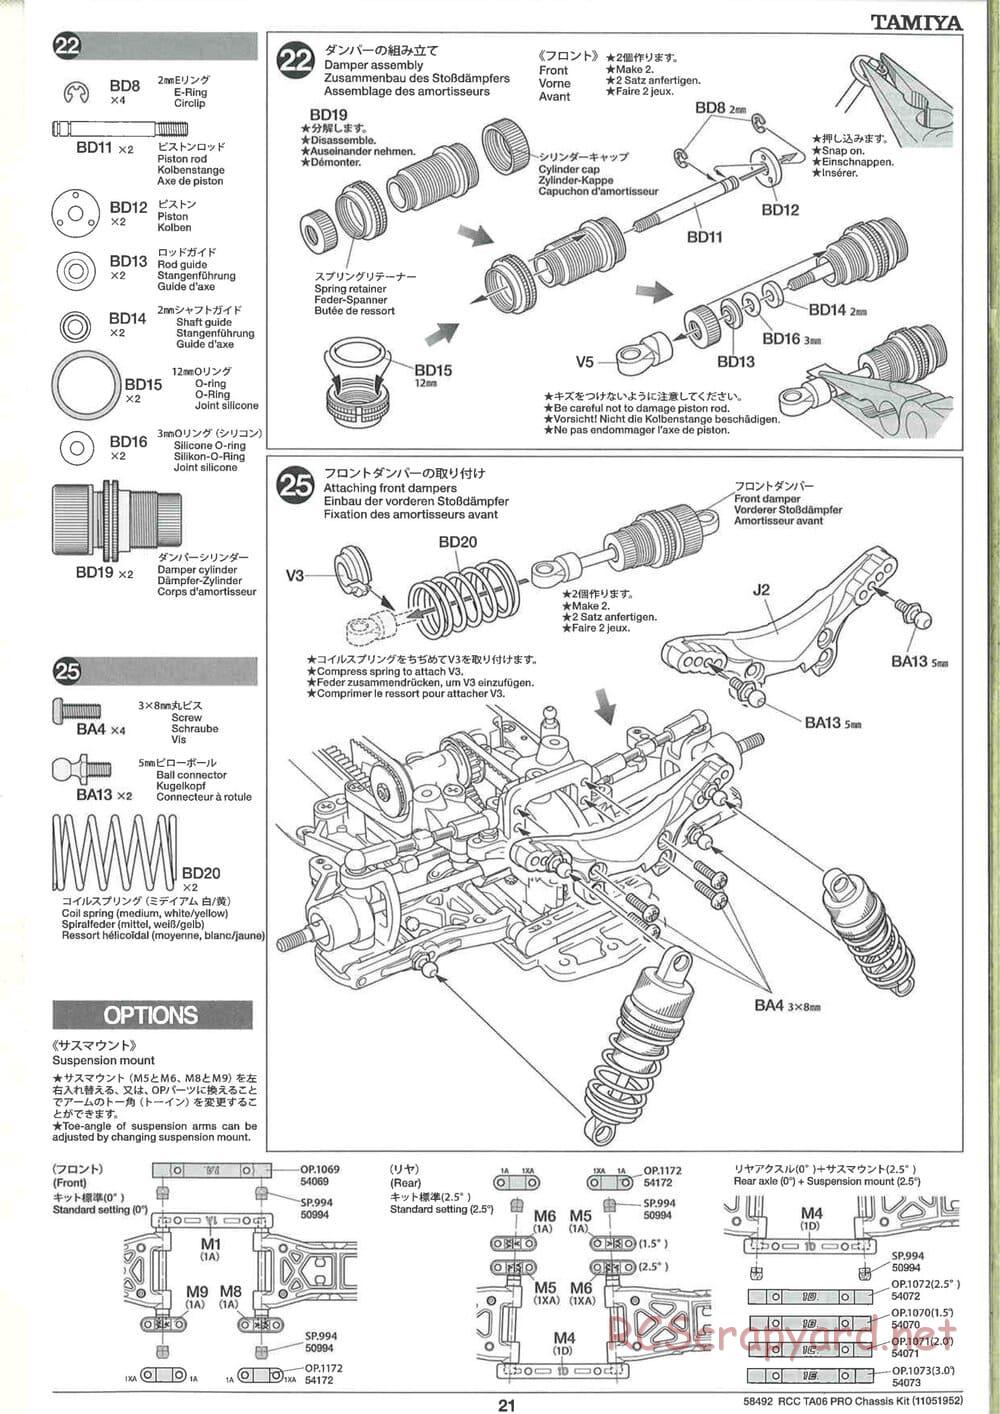 Tamiya - TA06 Pro Chassis - Manual - Page 21